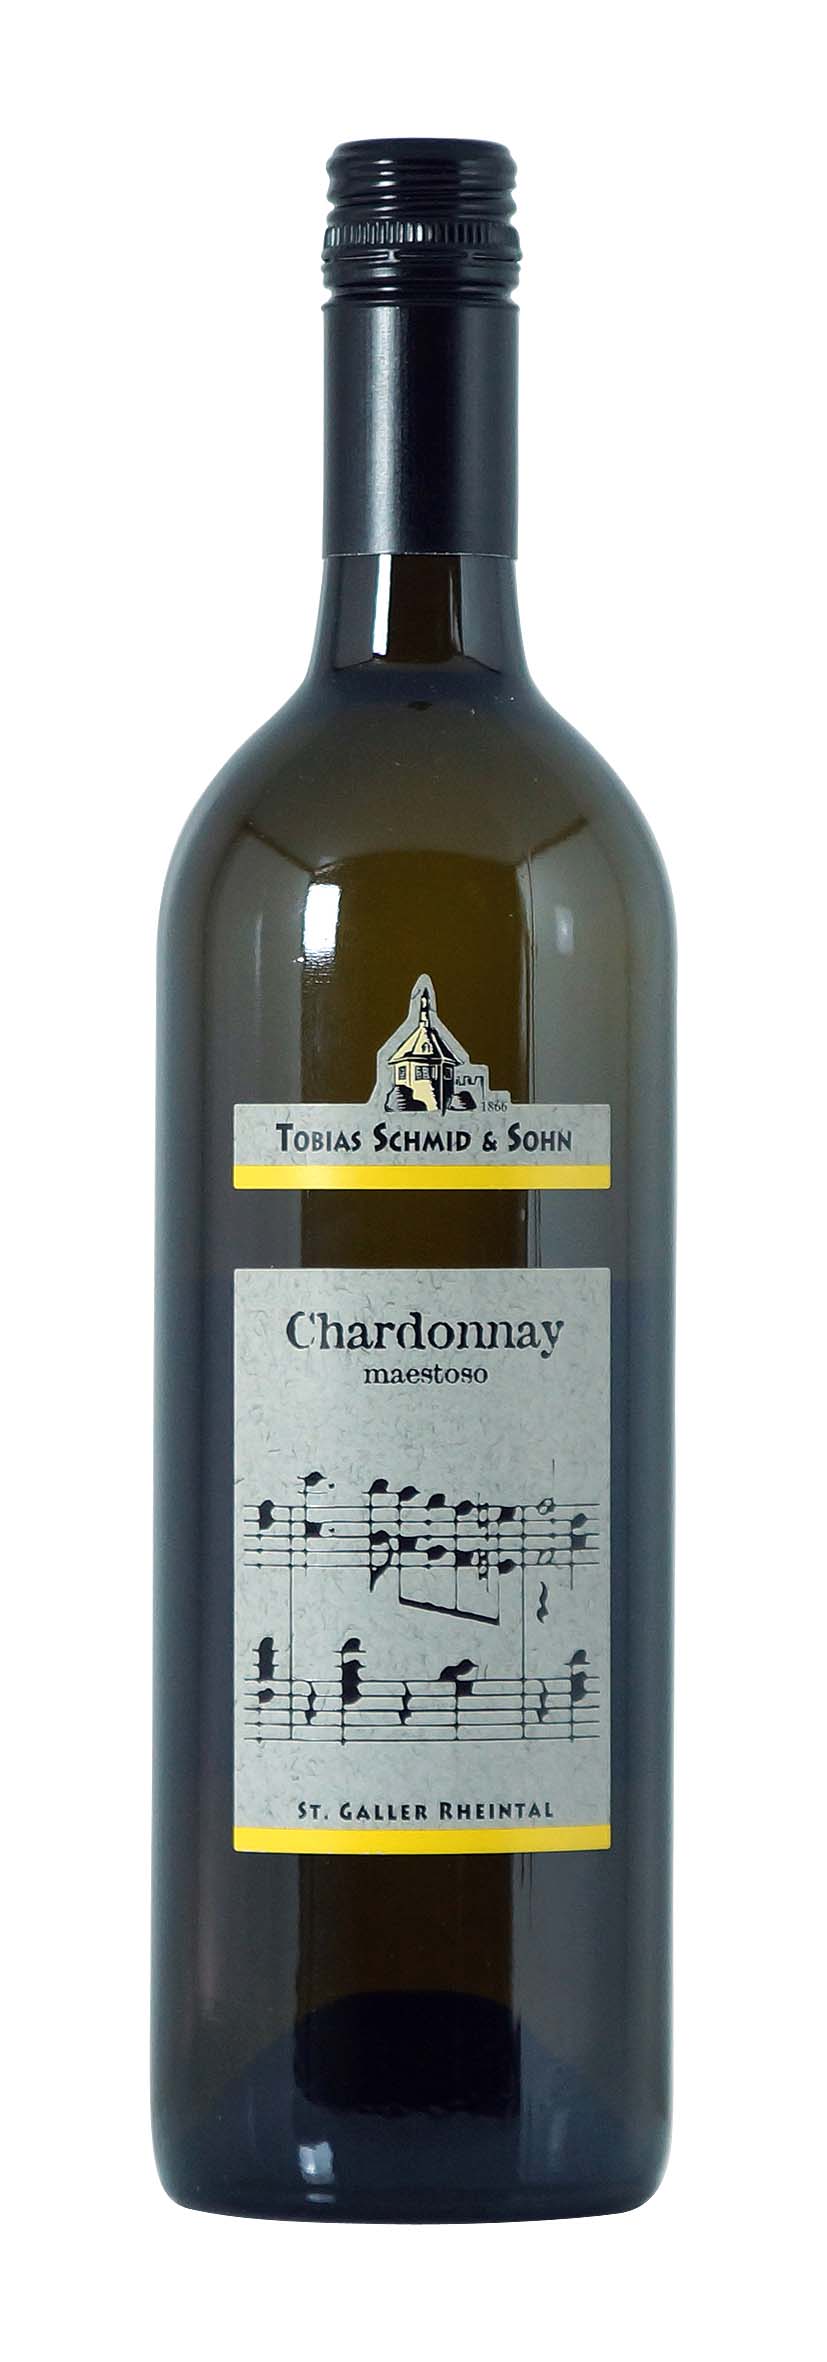 St. Gallen AOC Chardonnay maestoso 2012